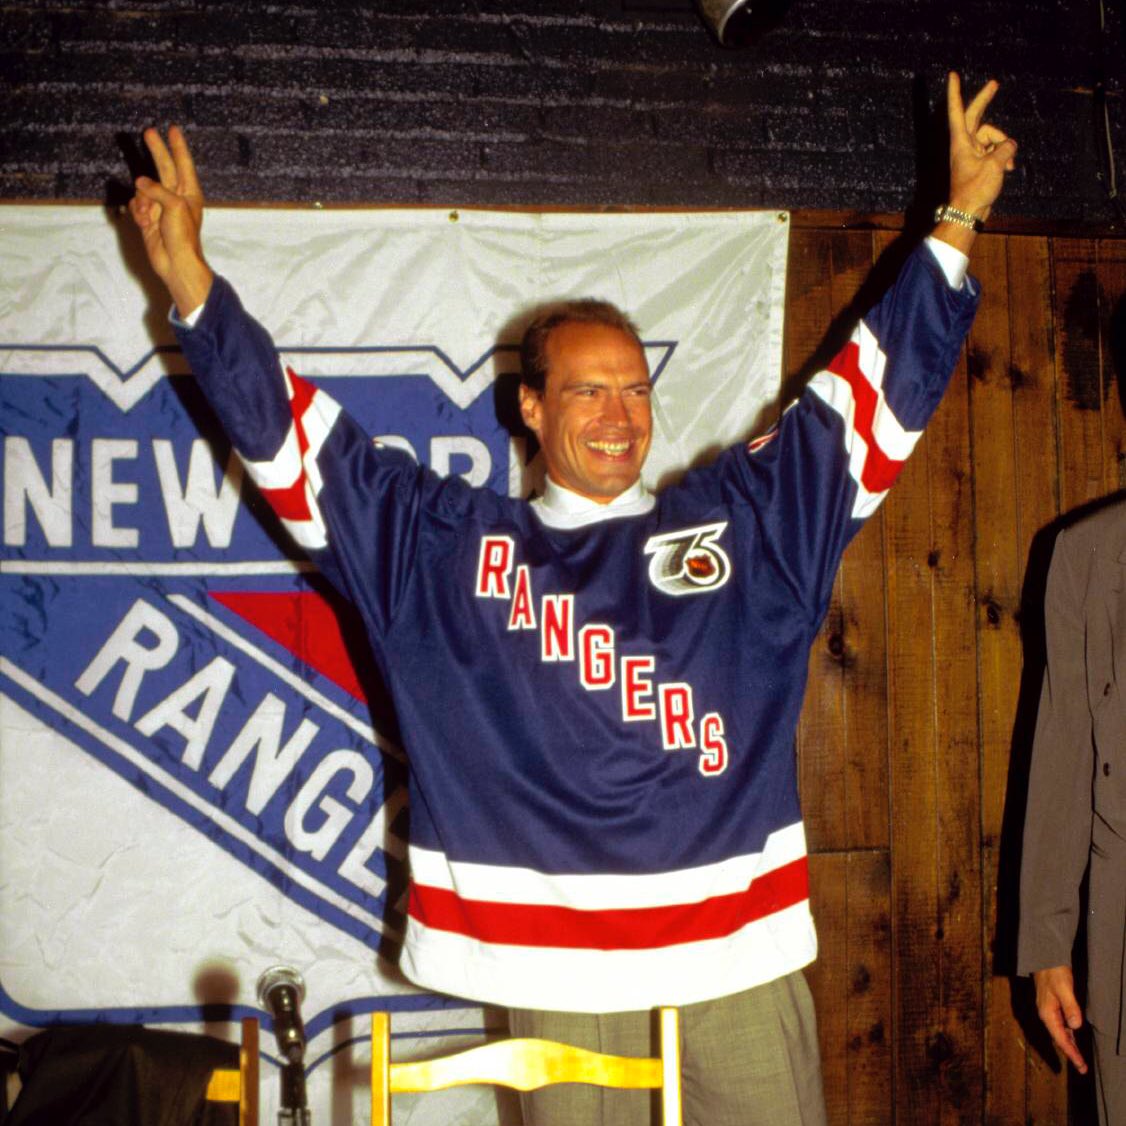 New York Rangers: The anniversary of Mark Messier's return in 2000